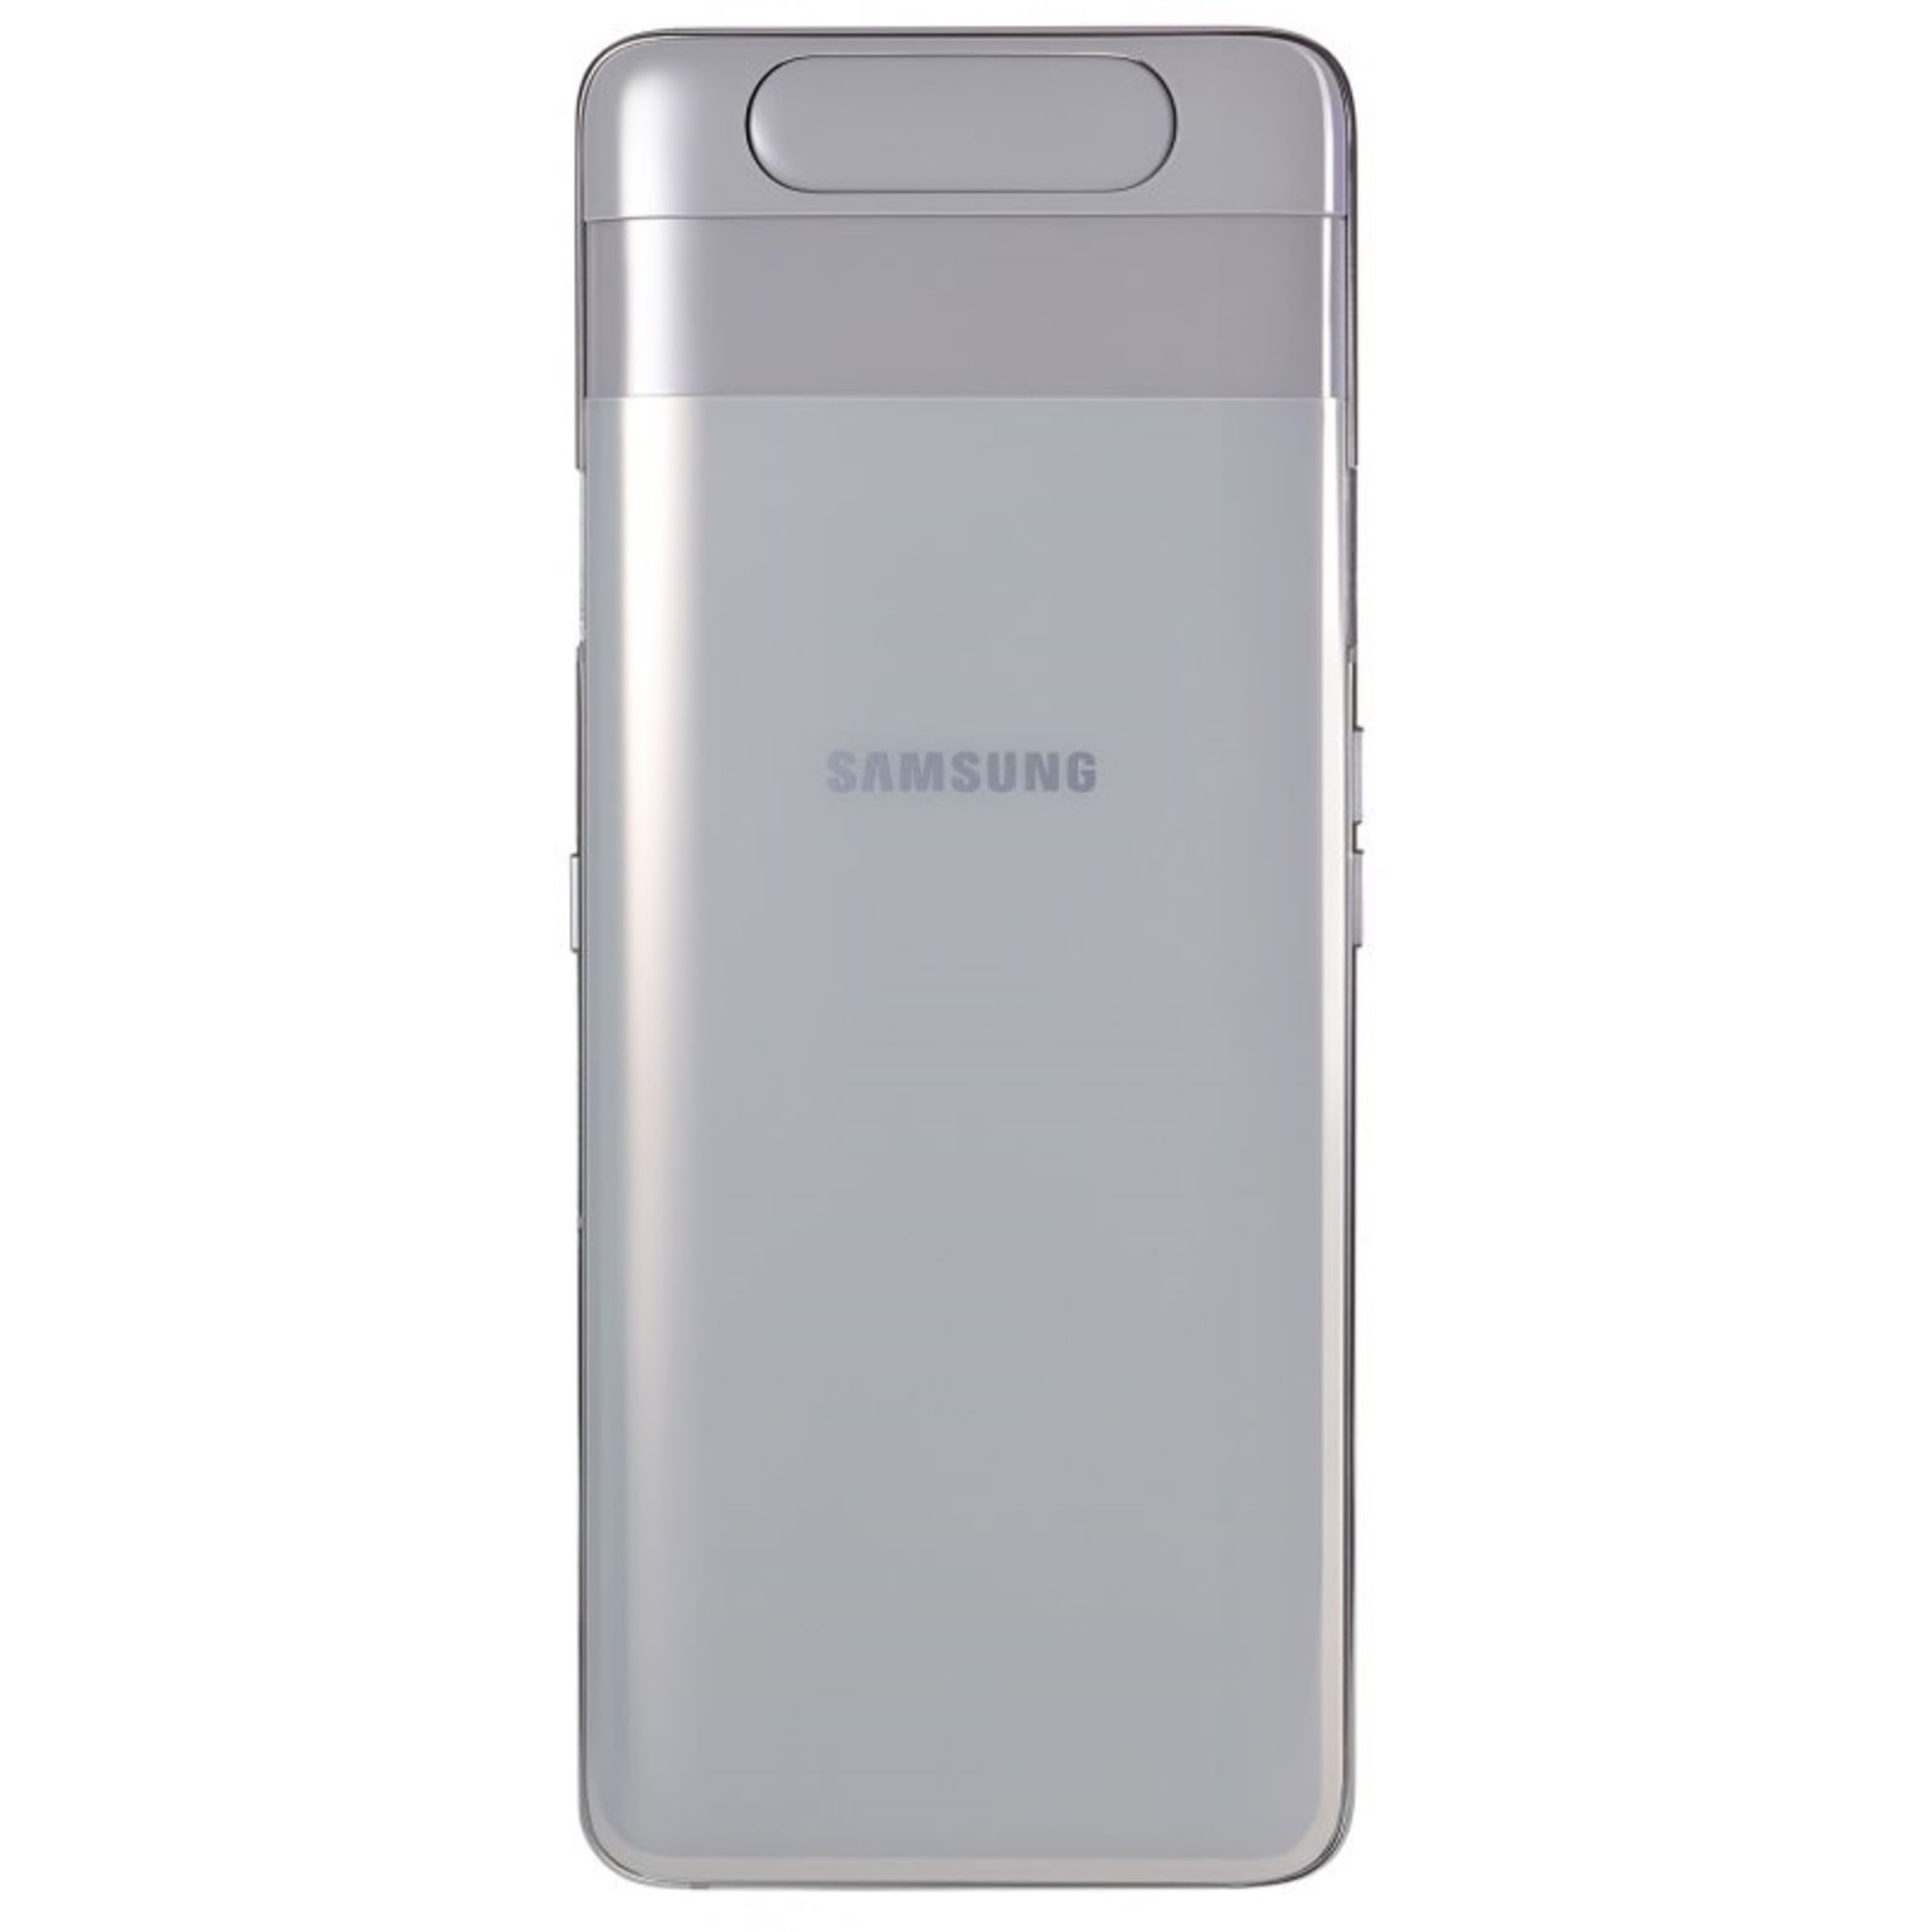 Samsung Galaxy A80 Or Rose 128Go Reconditionné